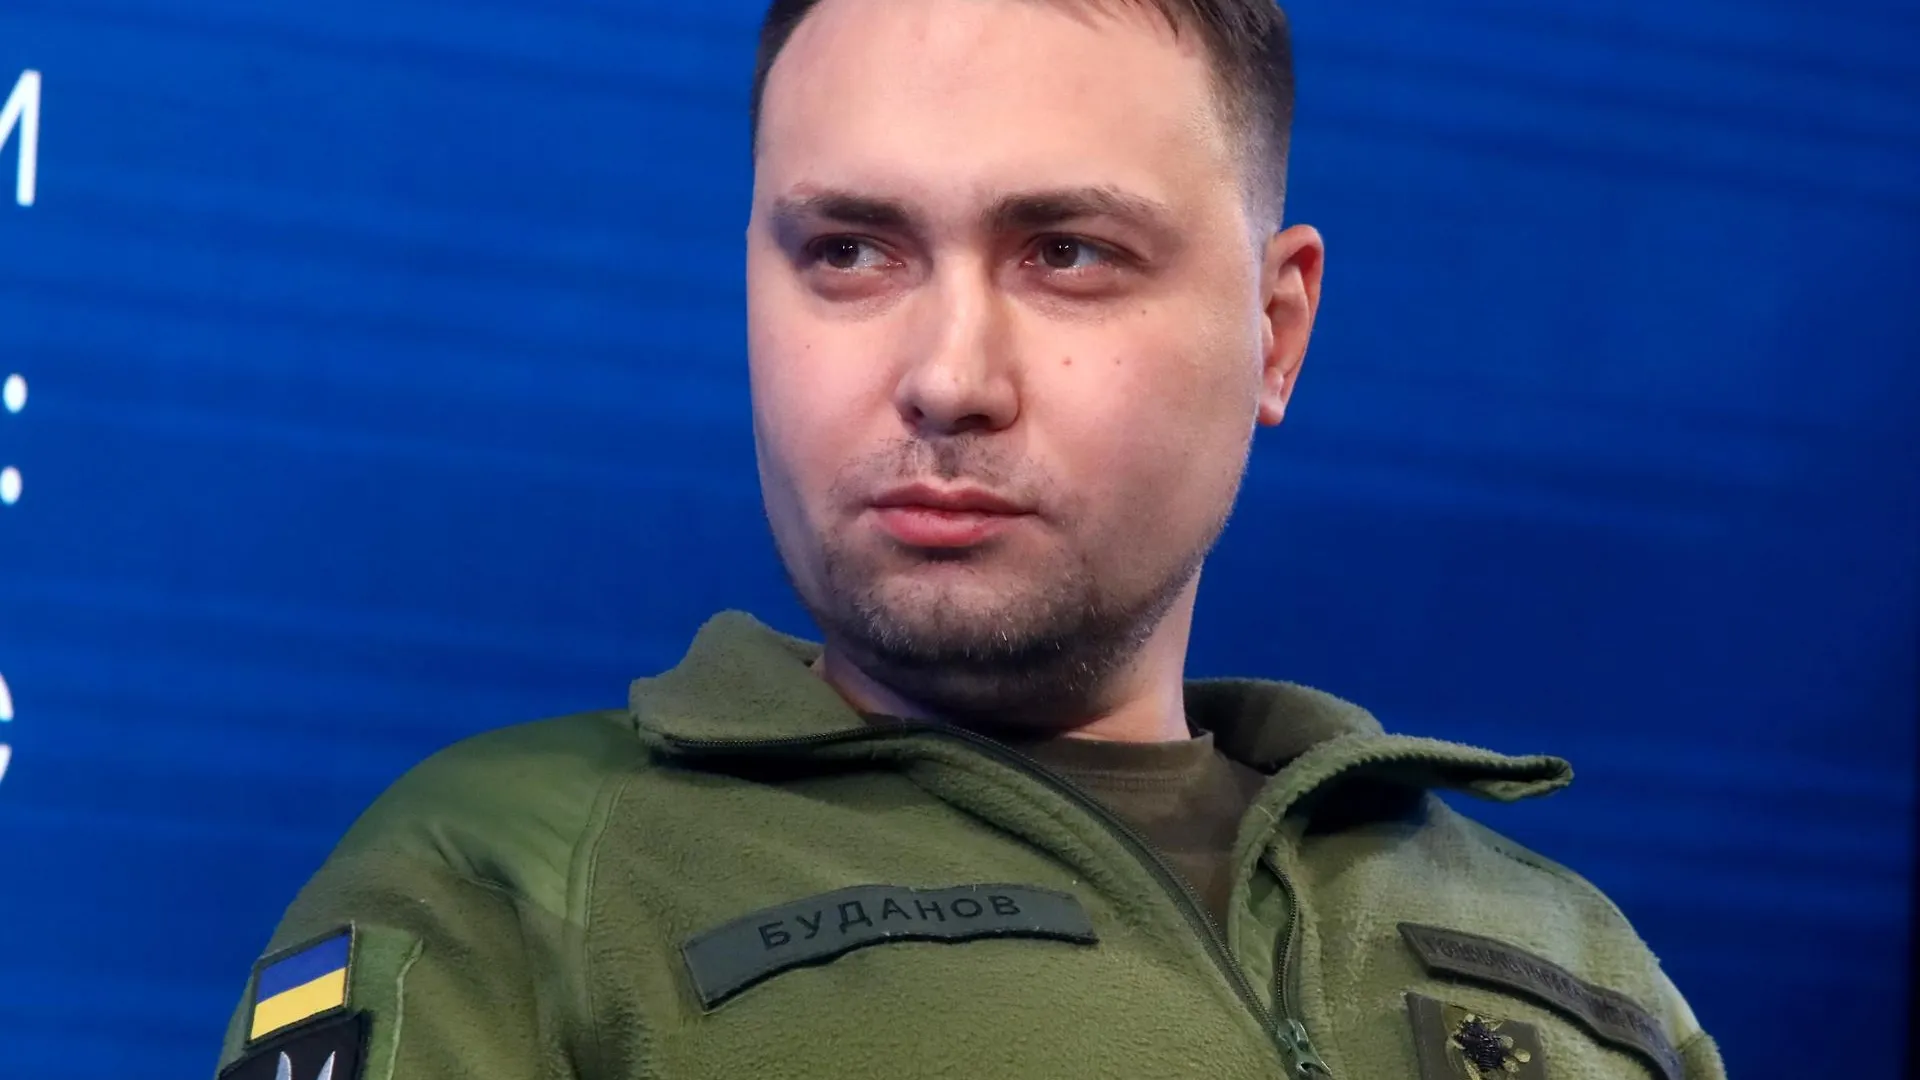 Volodymyr Tarasov